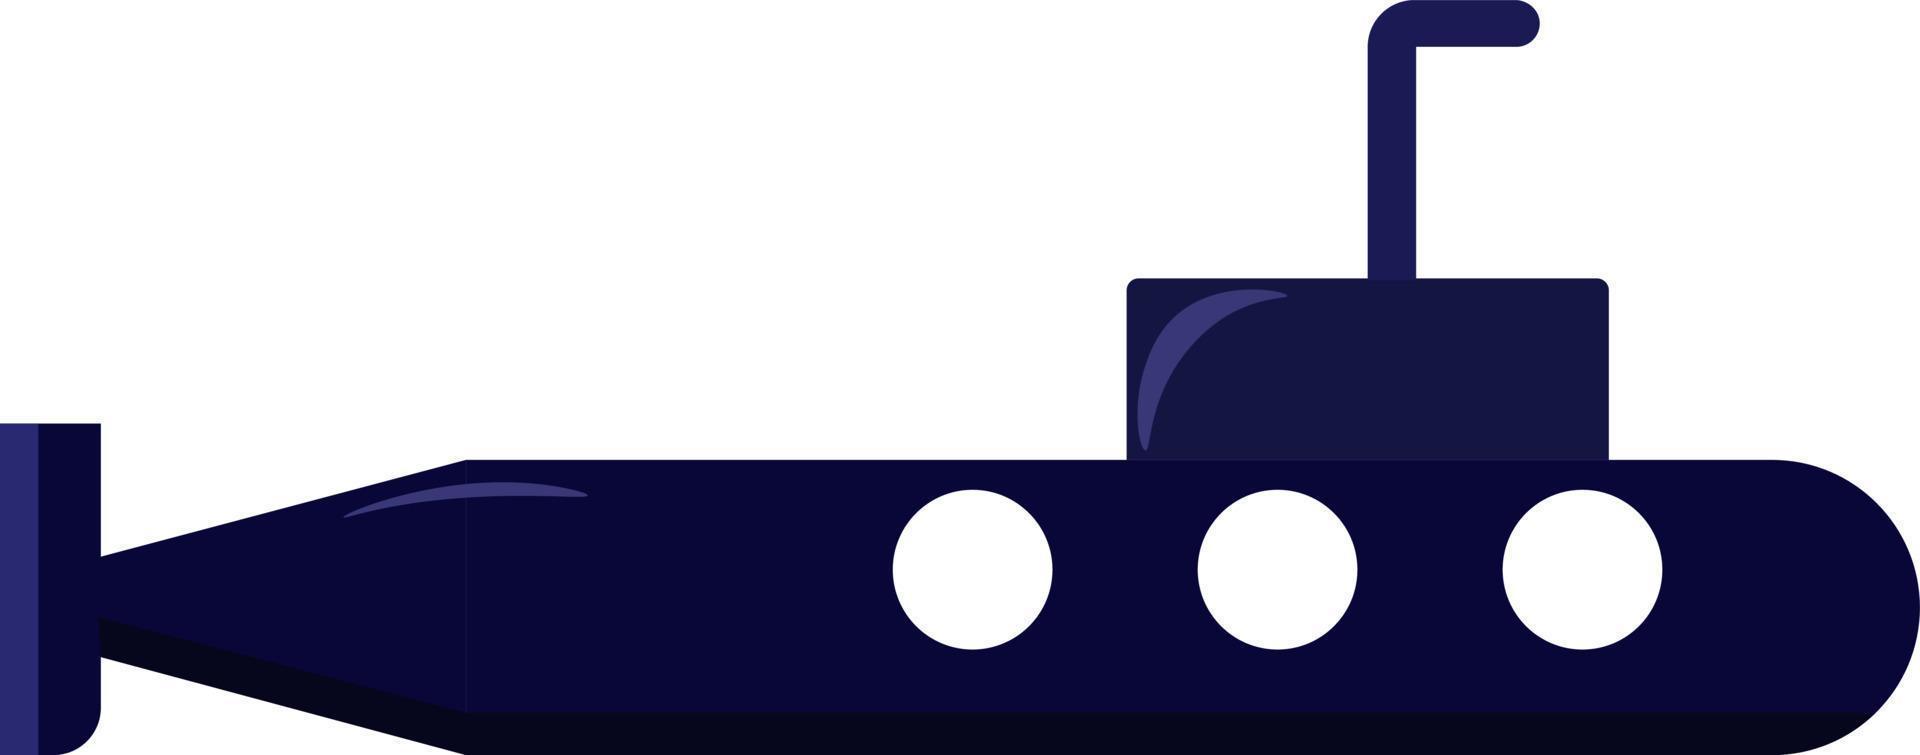 blå u-båt, illustration, vektor på vit bakgrund.